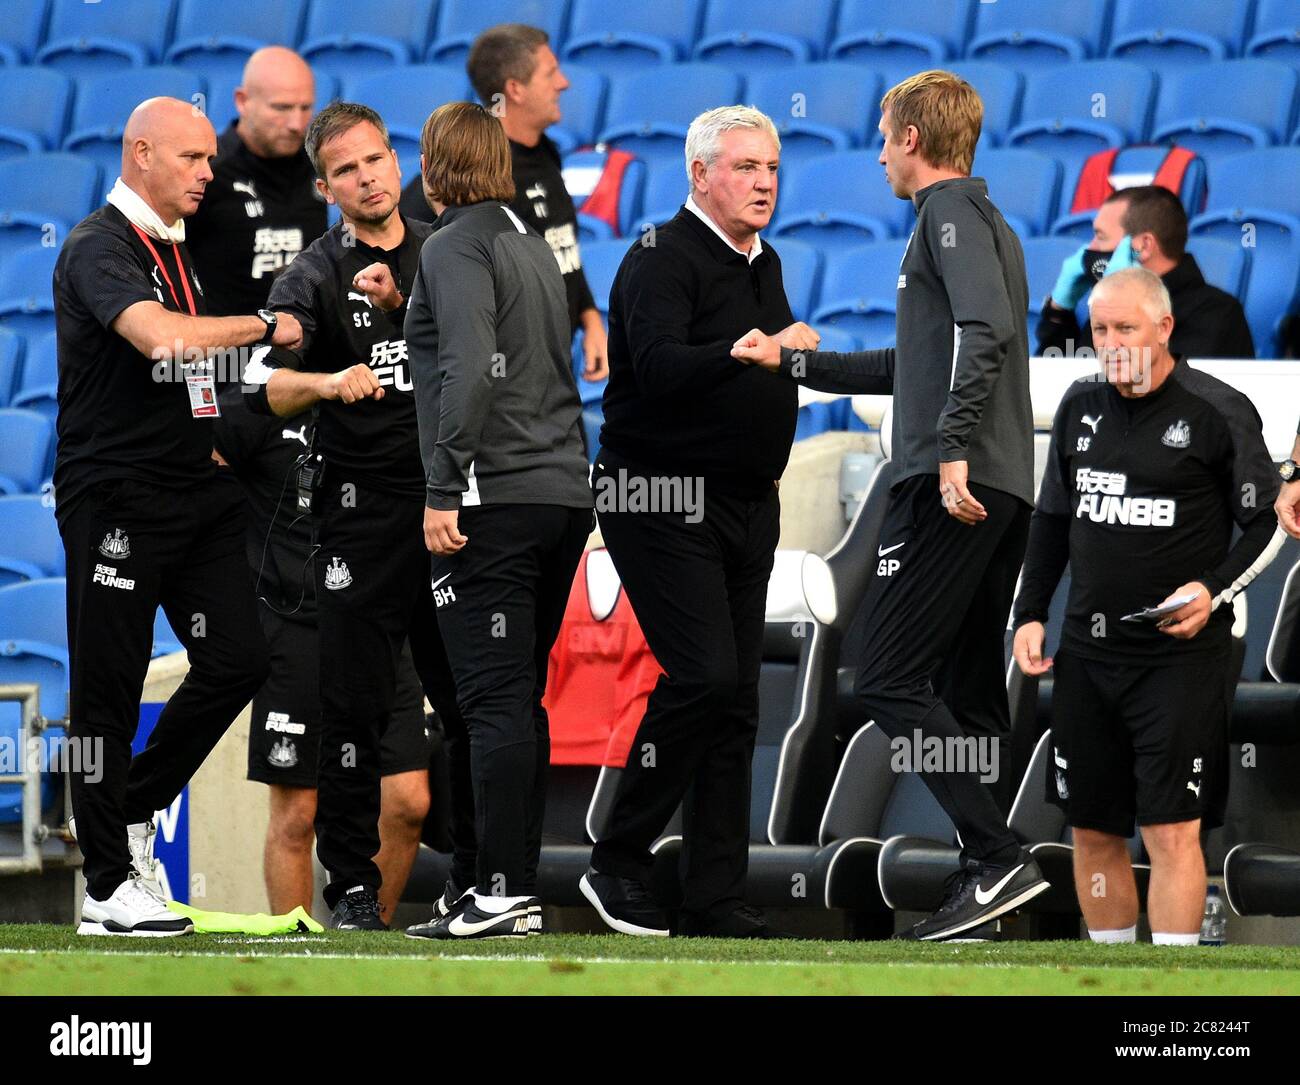 Il manager Steve Bruce e Brighton di Newcastle United e il manager di Hove Albion Graham Potter (a destra) si sono pugnalati dopo la partita della Premier League all'Amex Stadium di Brighton. Foto Stock